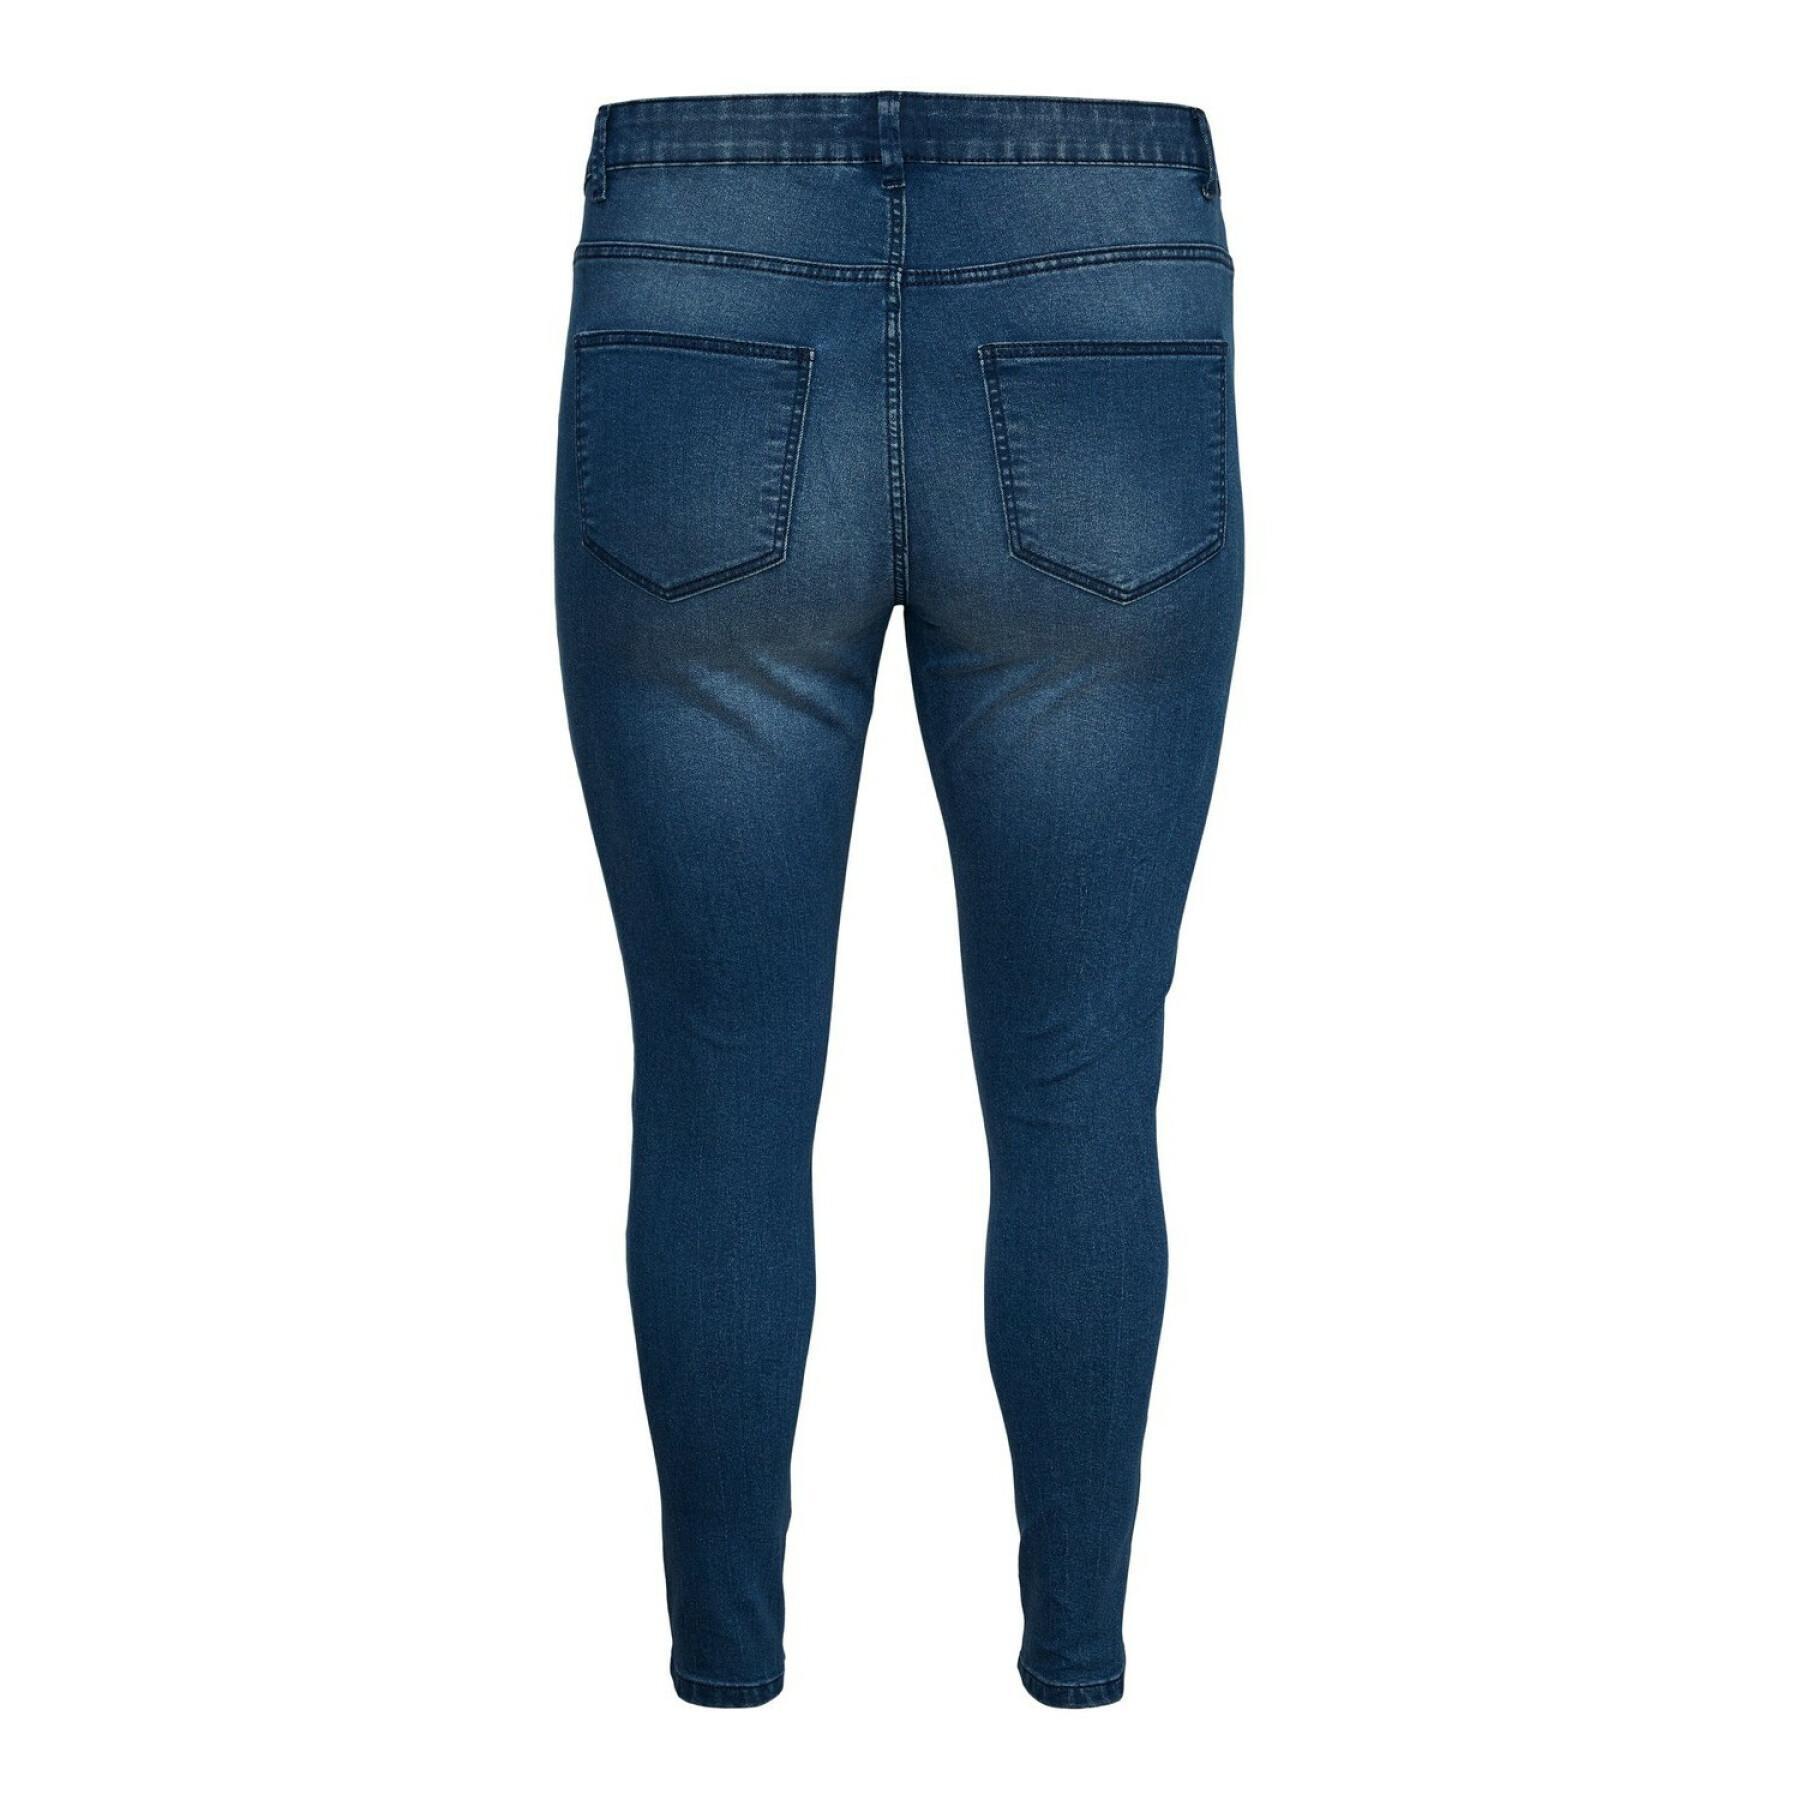 Slim jeans voor dames Vero Moda vmludy